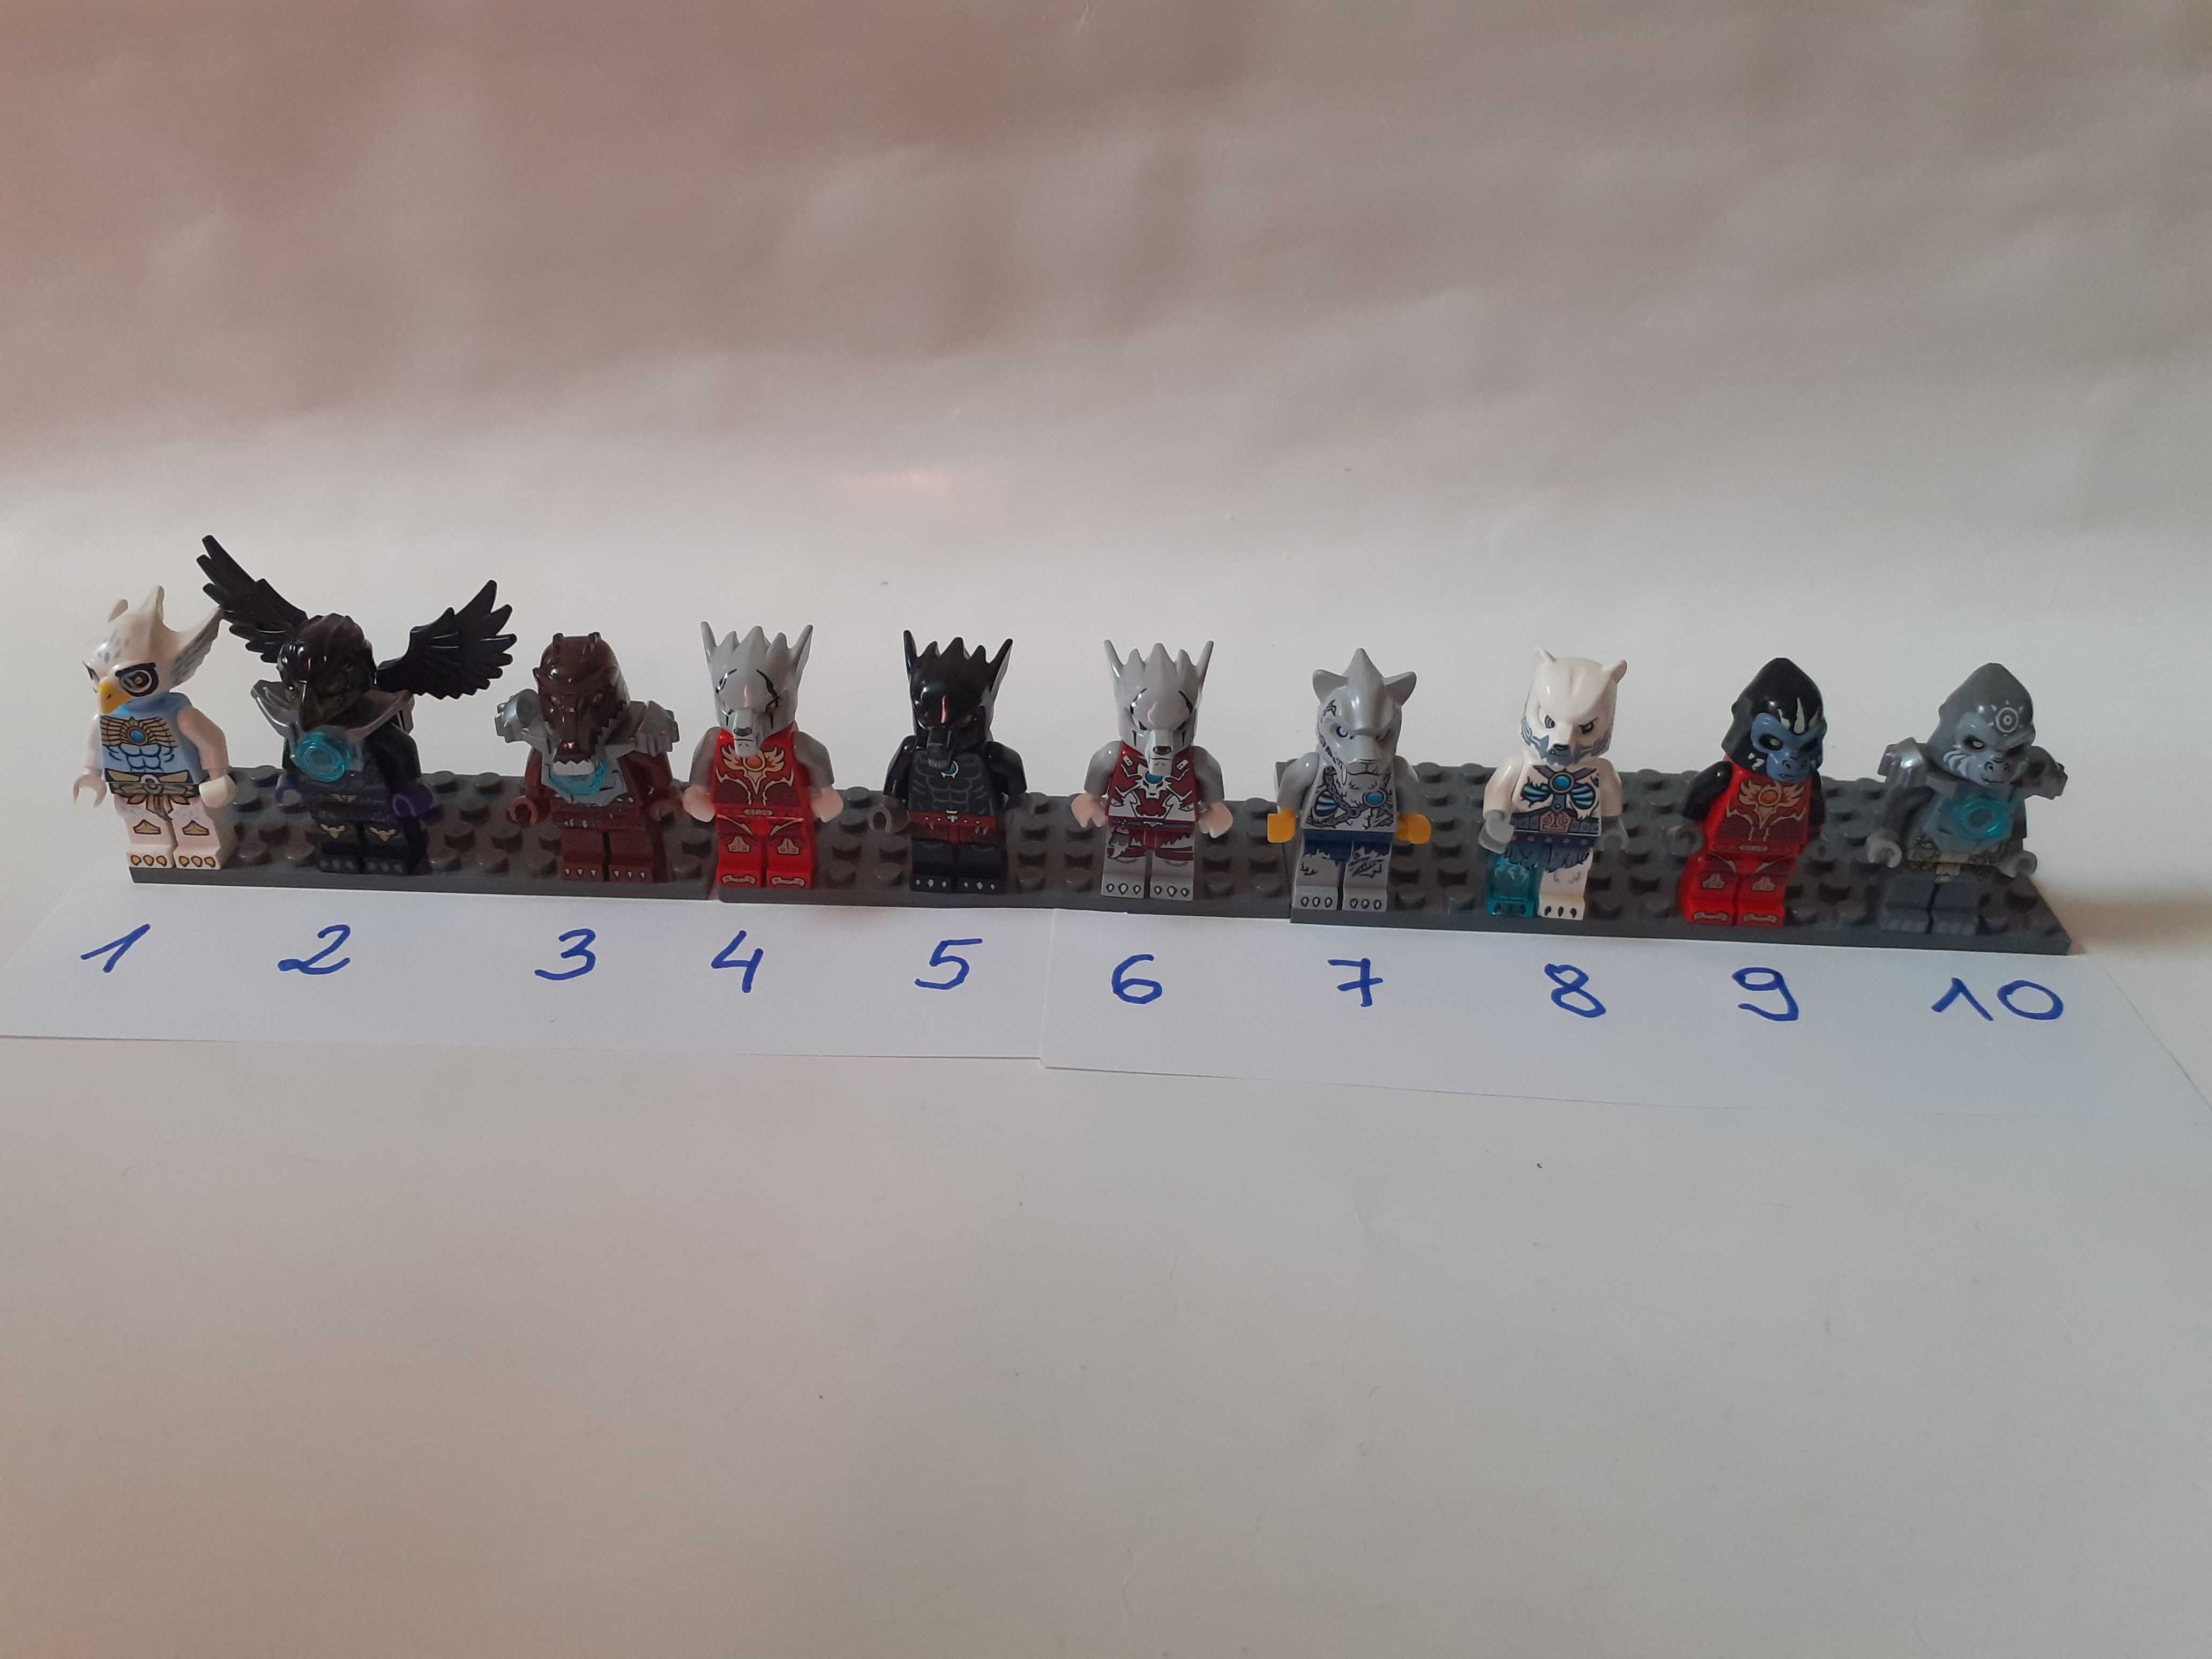 Lego Chima - Minifigures, różne Minifigurki - Razcal, Worriz, Sykor